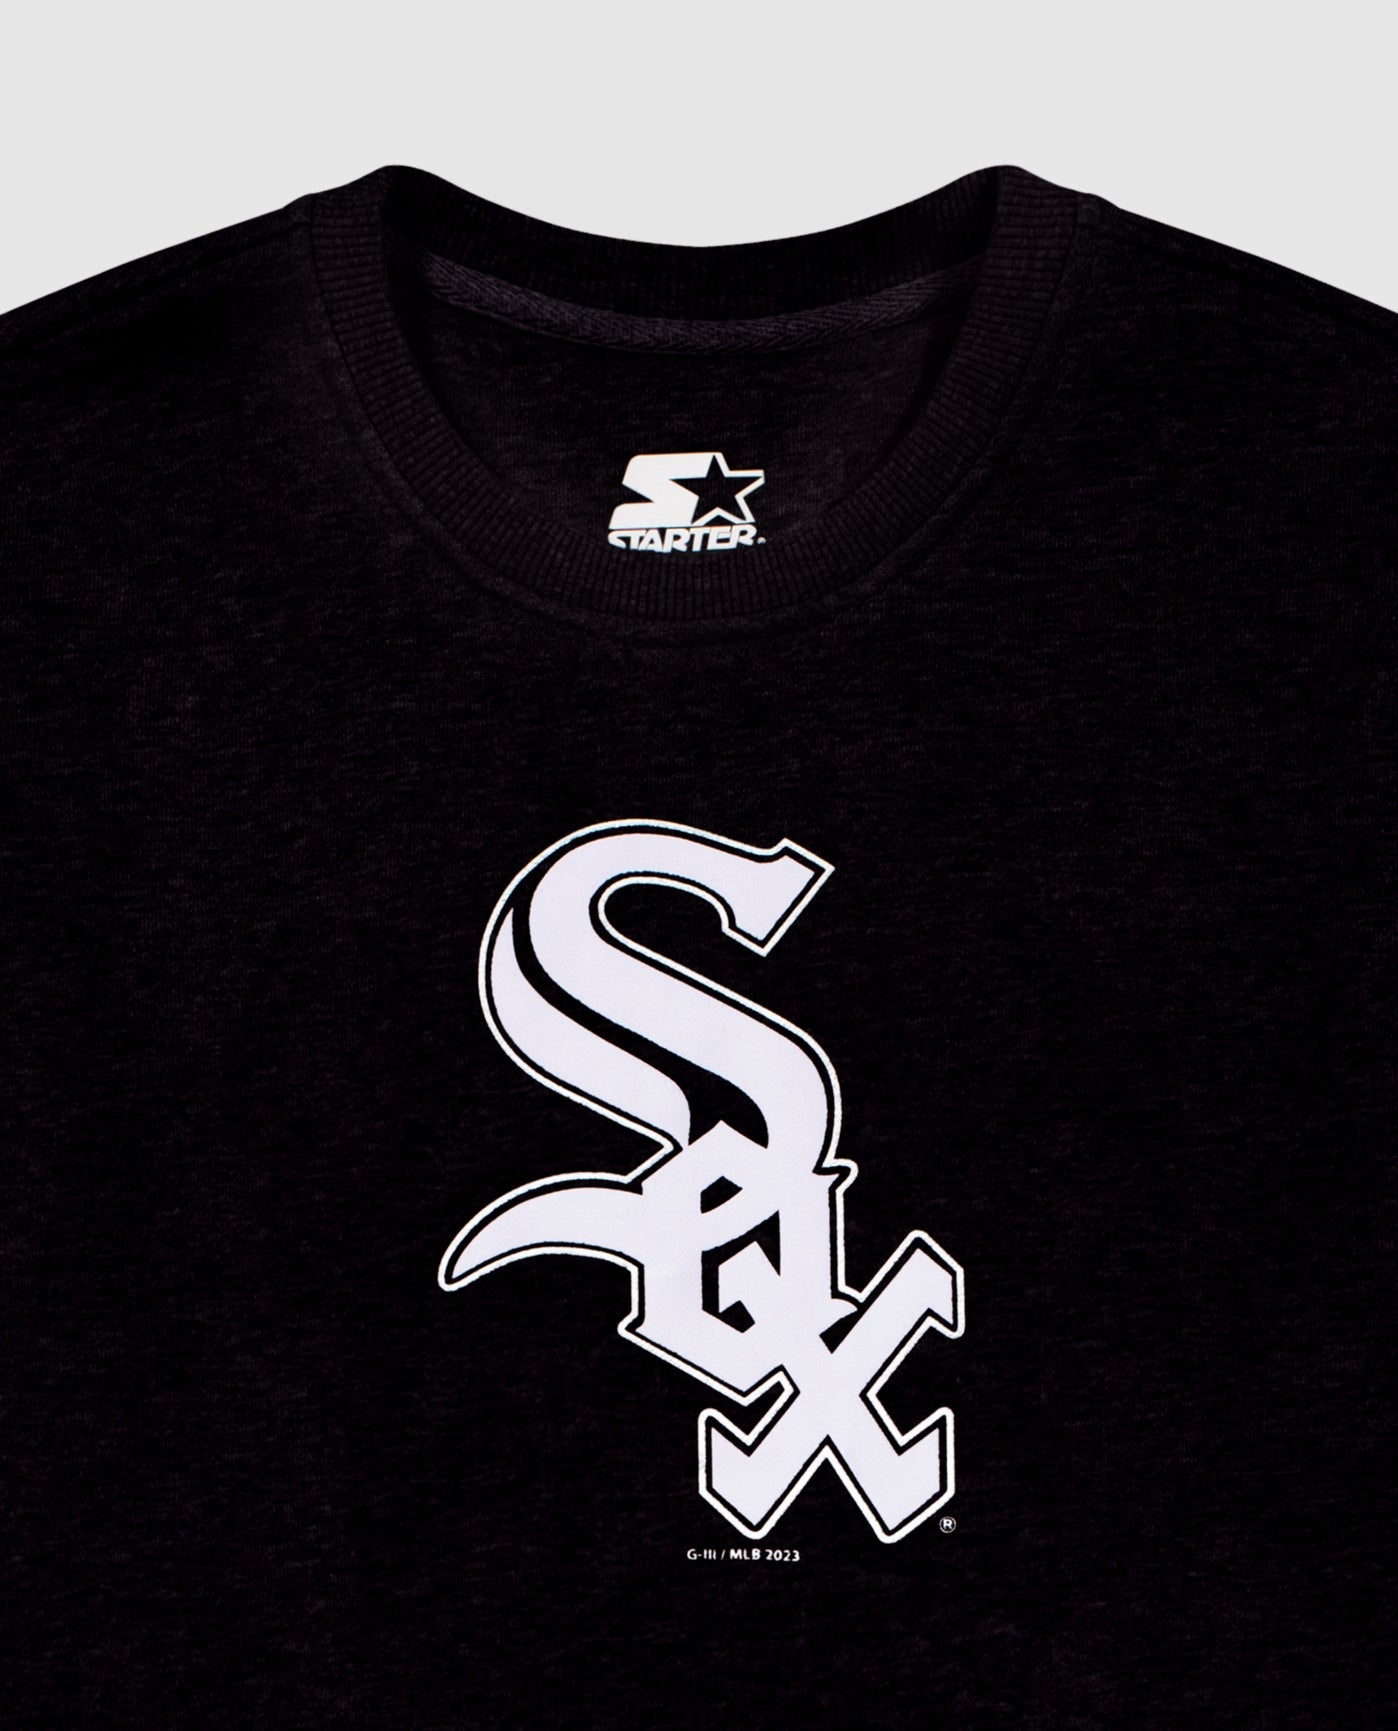 New Era - Chicago White Sox MLB Team Graphic T-Shirt - White